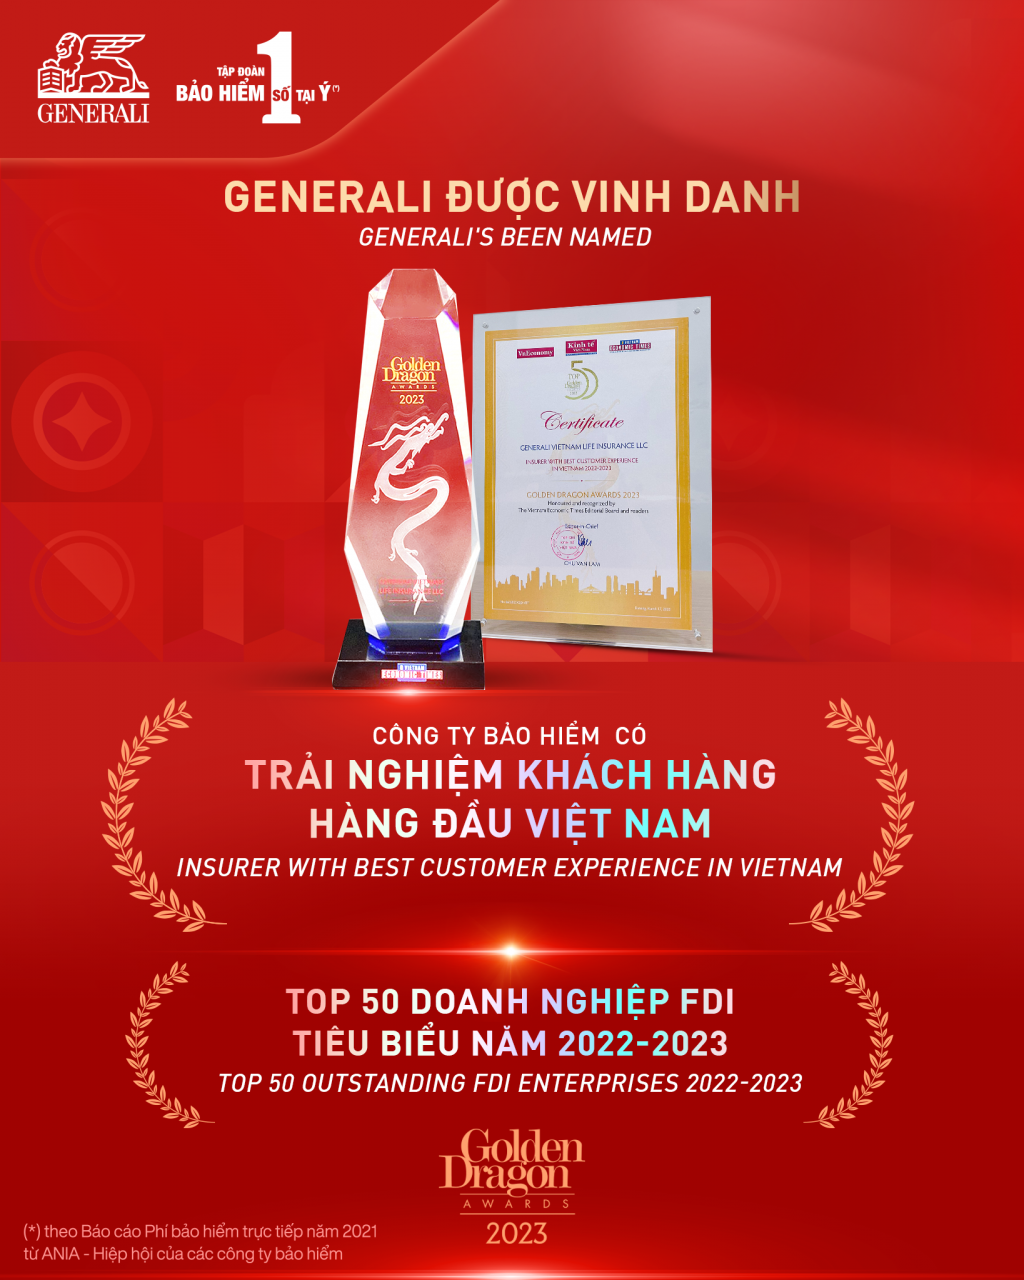 Generali Việt Nam khẳng định vị thế dẫn đầu thị trường về trải nghiệm khách hàng với giải thưởng “Công ty Bảo hiểm có trải nghiệm khách hàng hàng đầu Việt Nam” trong hệ thống giải thưởng Rồng Vàng lần thứ 22 và được vinh danh Top 50 Doanh nghiệp FDI tiêu biểu năm 2022-2023